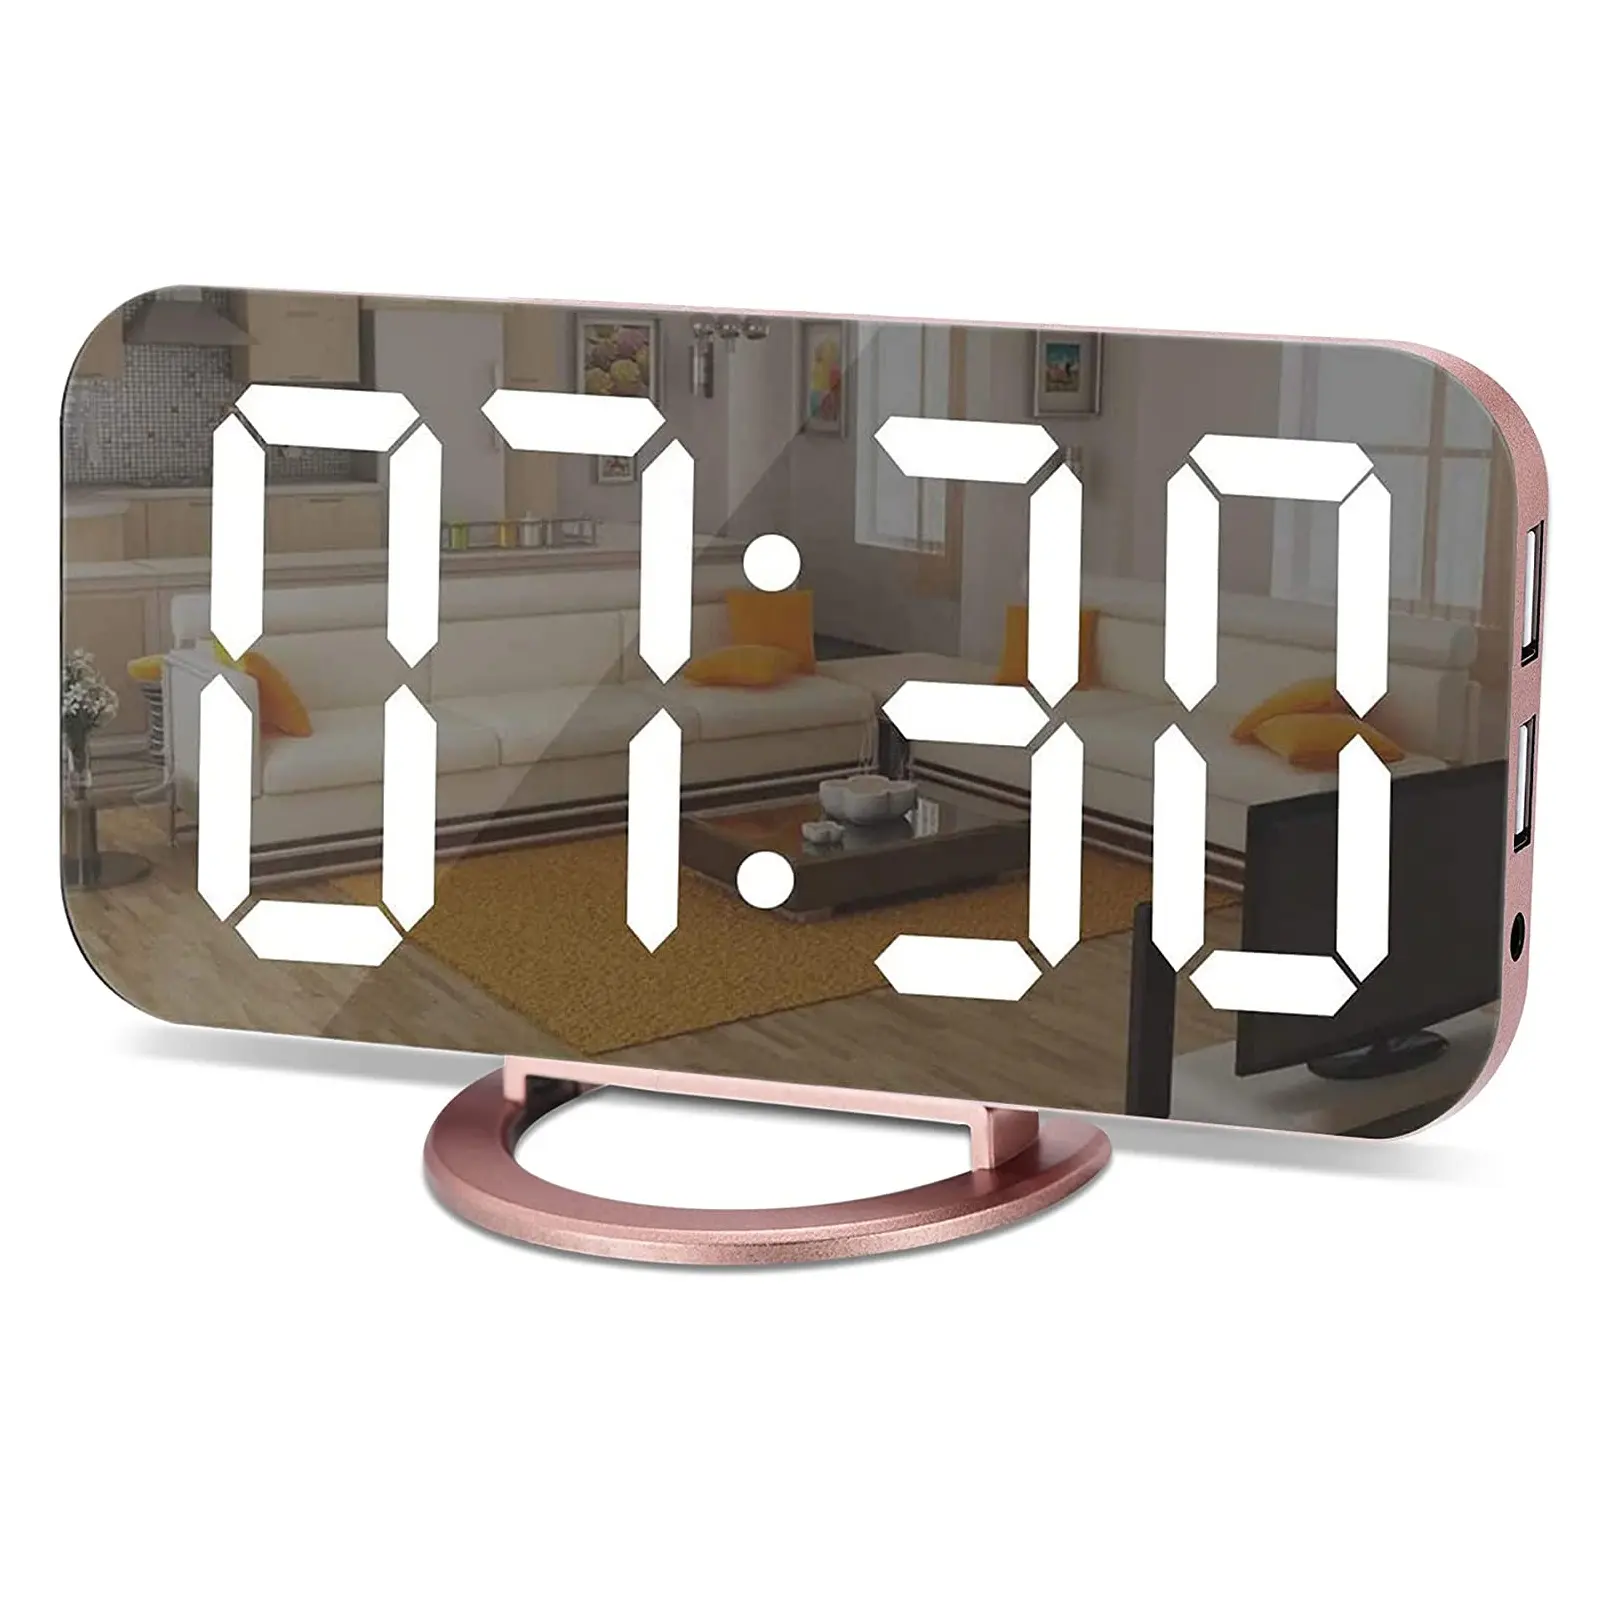 De tiempo de alarma de reloj con doble puerto USB para cargador de teléfono la siesta. Dimmer Digital LED reloj con batería de respaldo